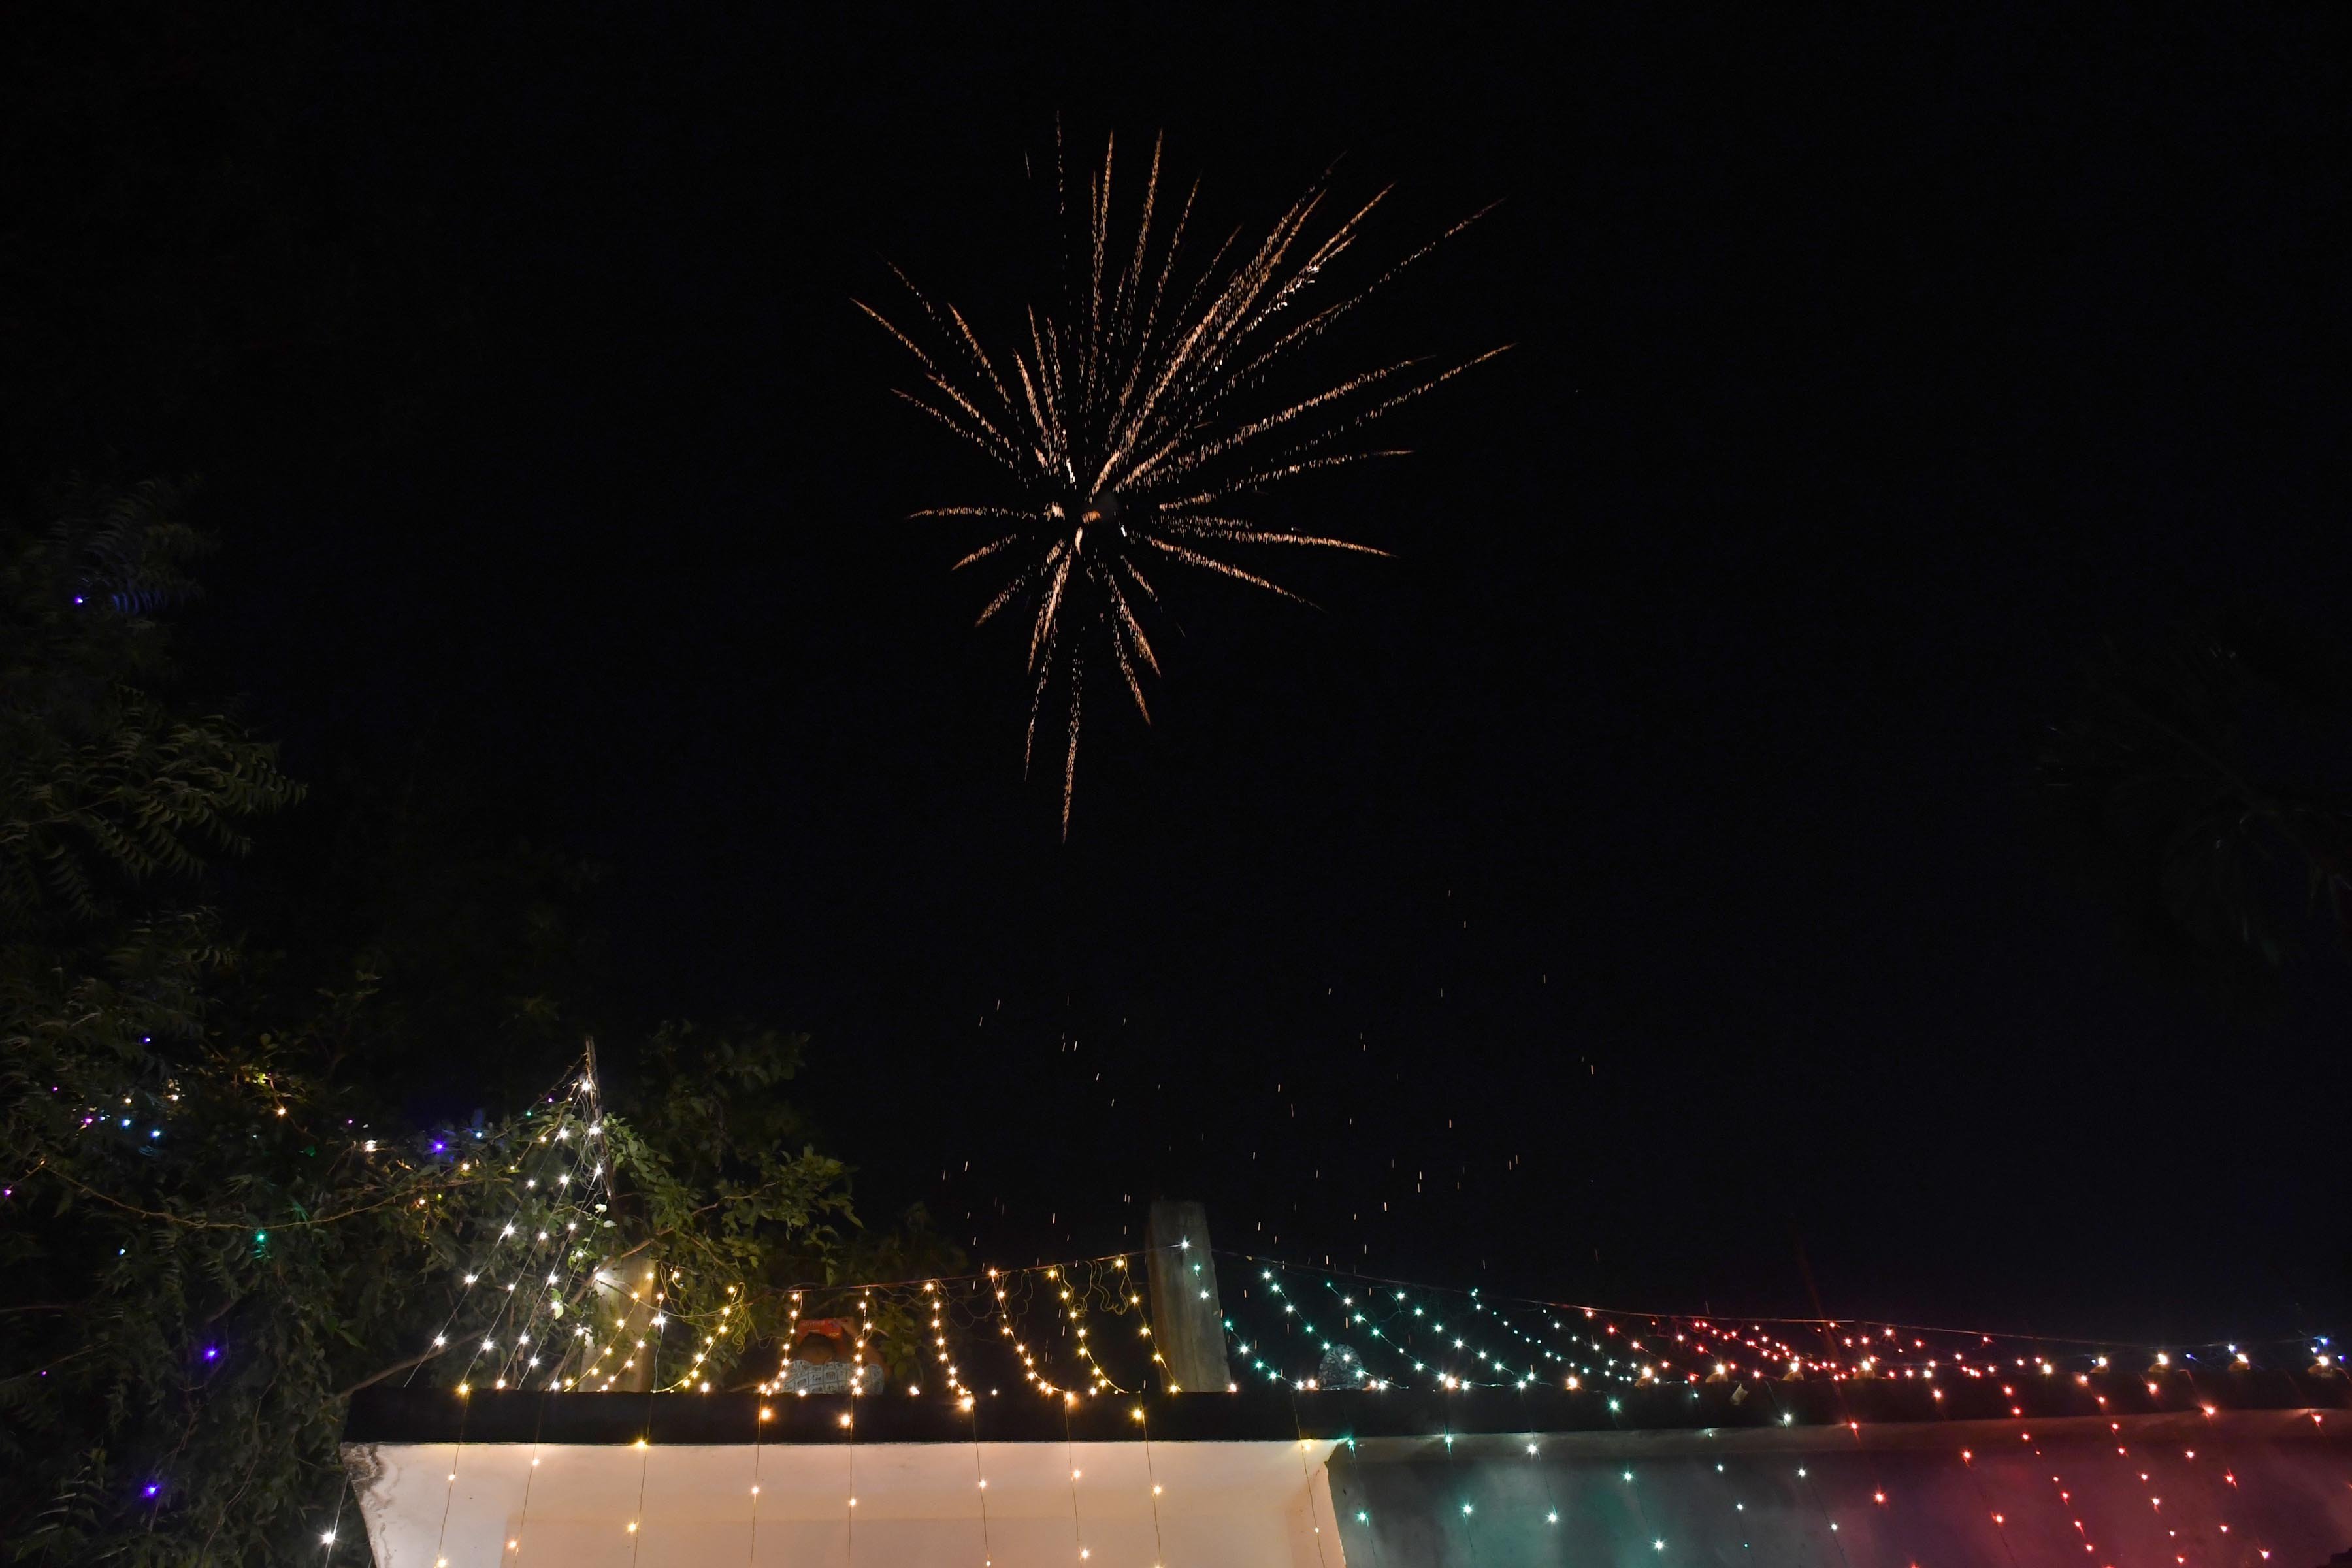 Festival Diwali, Guwahati